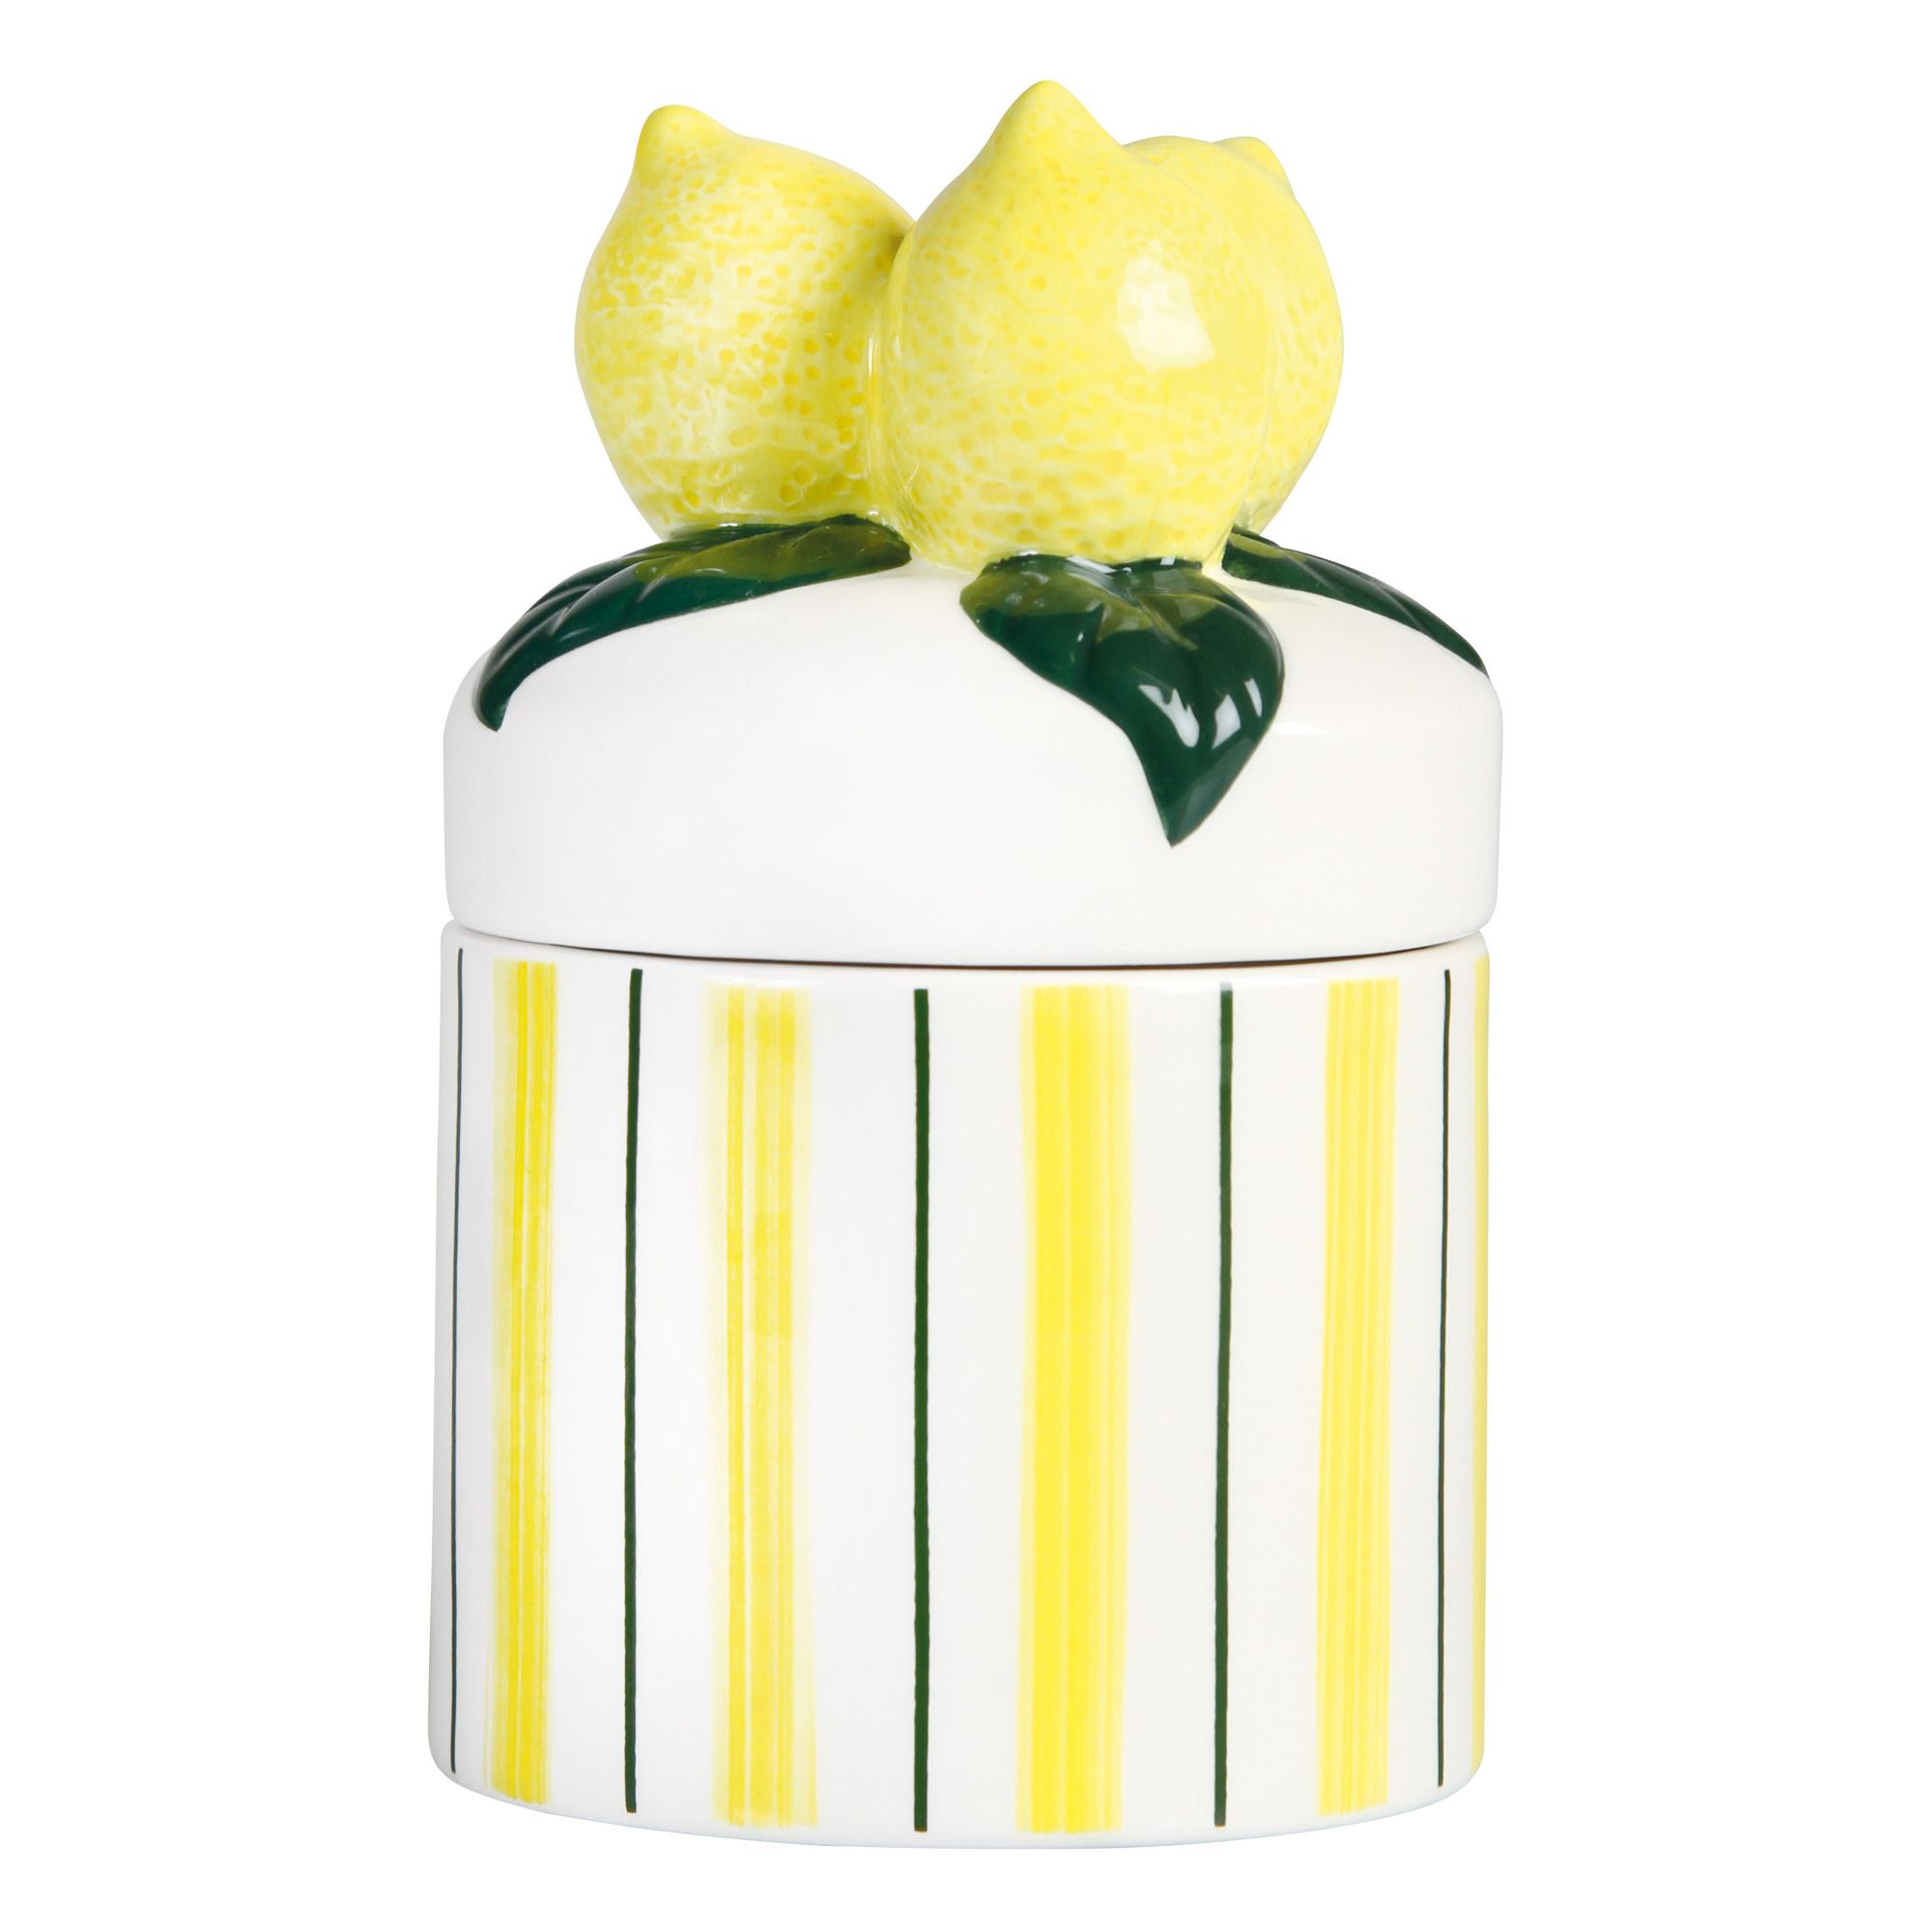 &Klevering - Pot en citron céramique - Multicolore